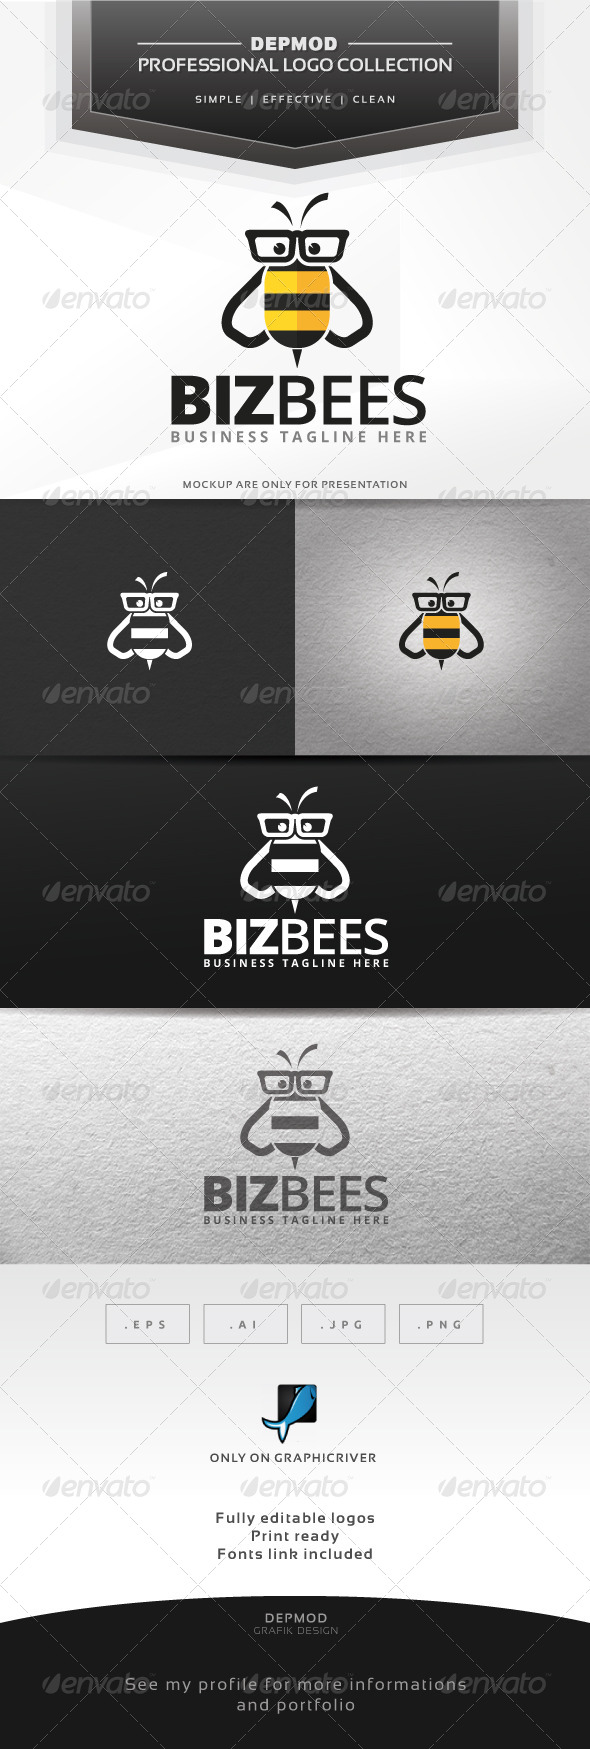 Biz Bees Logo